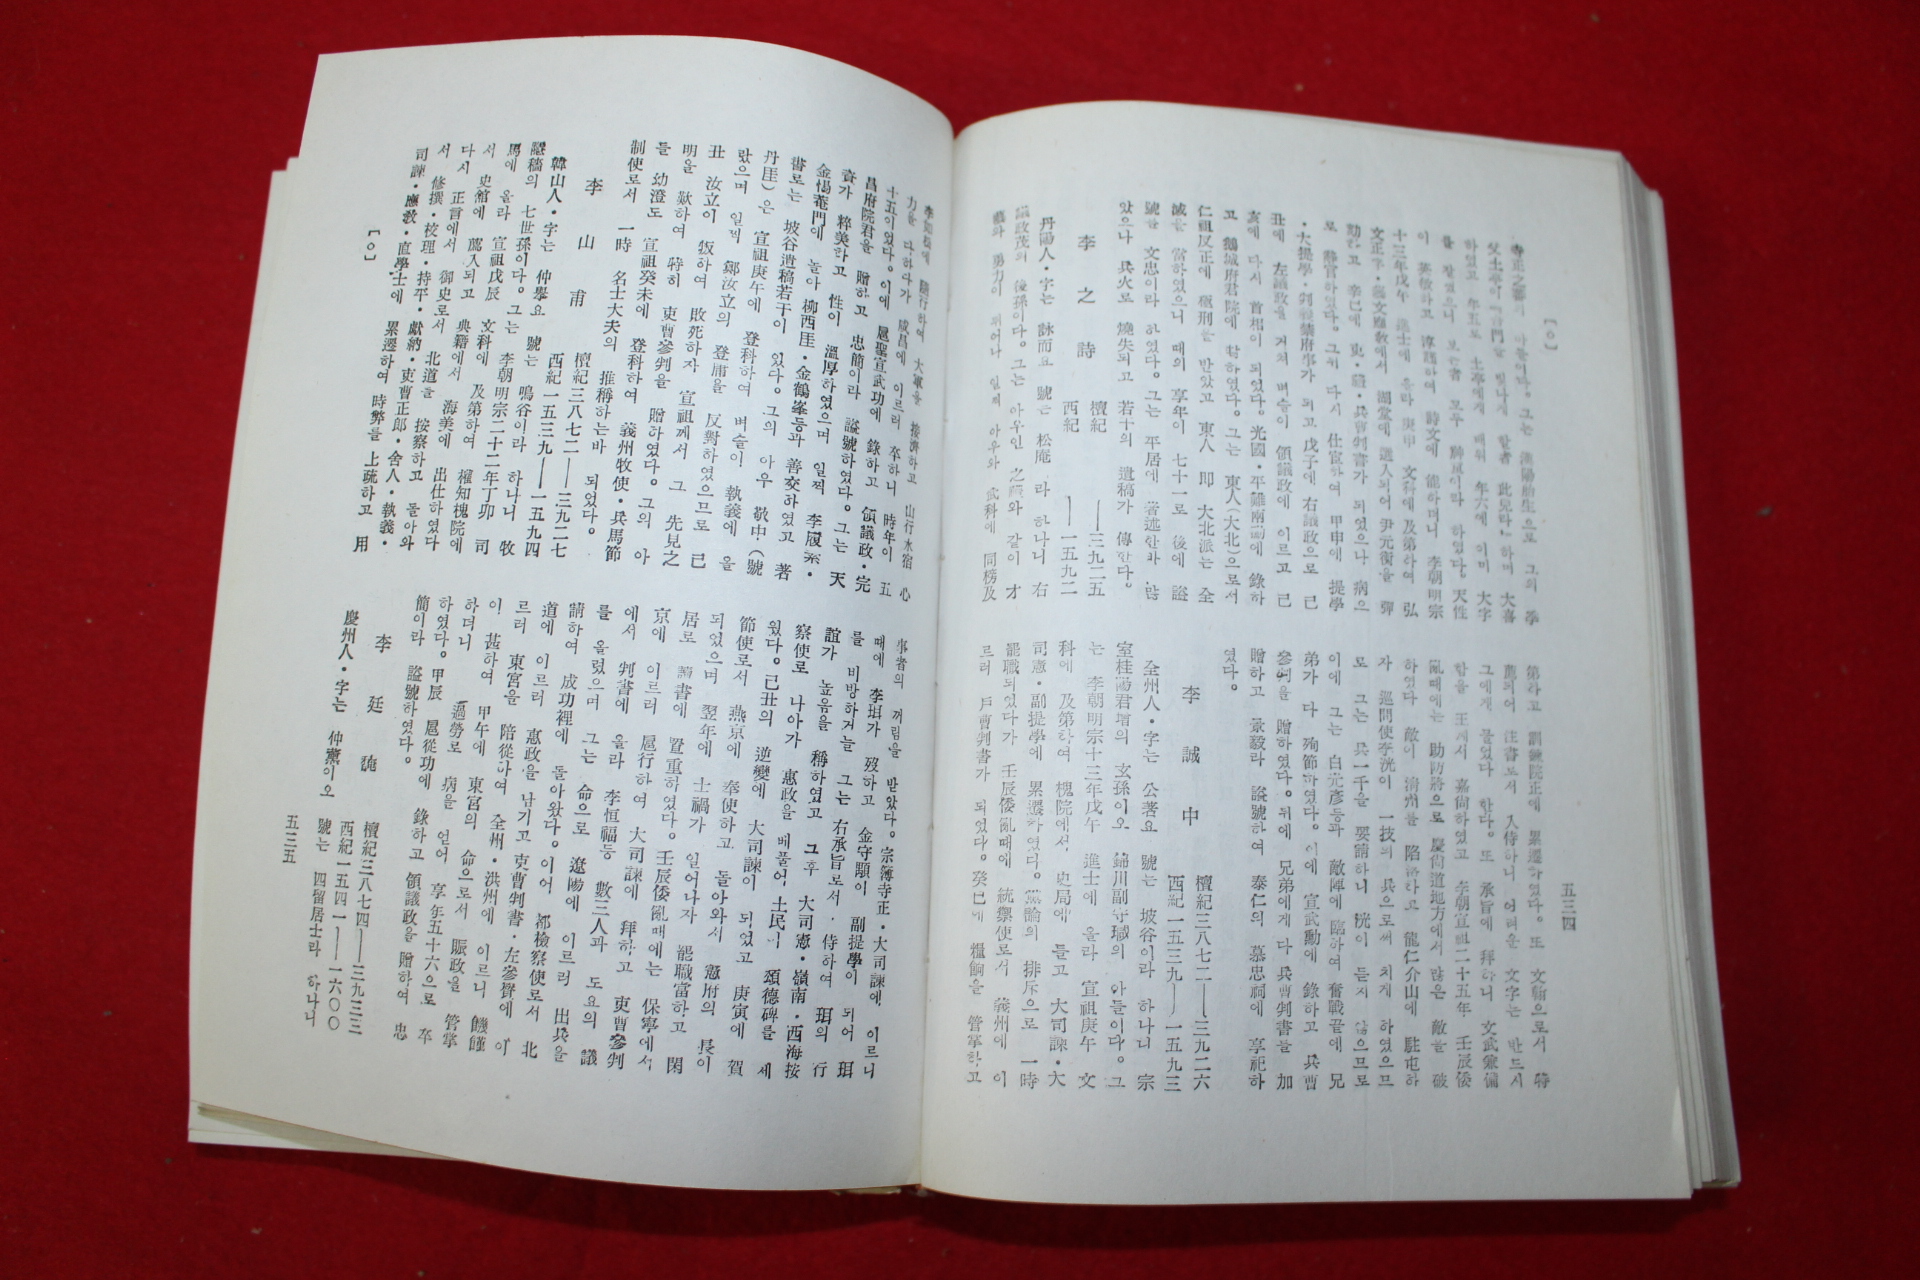 1981년 윤갑식(尹甲植) 조선명인전(朝鮮名人典)